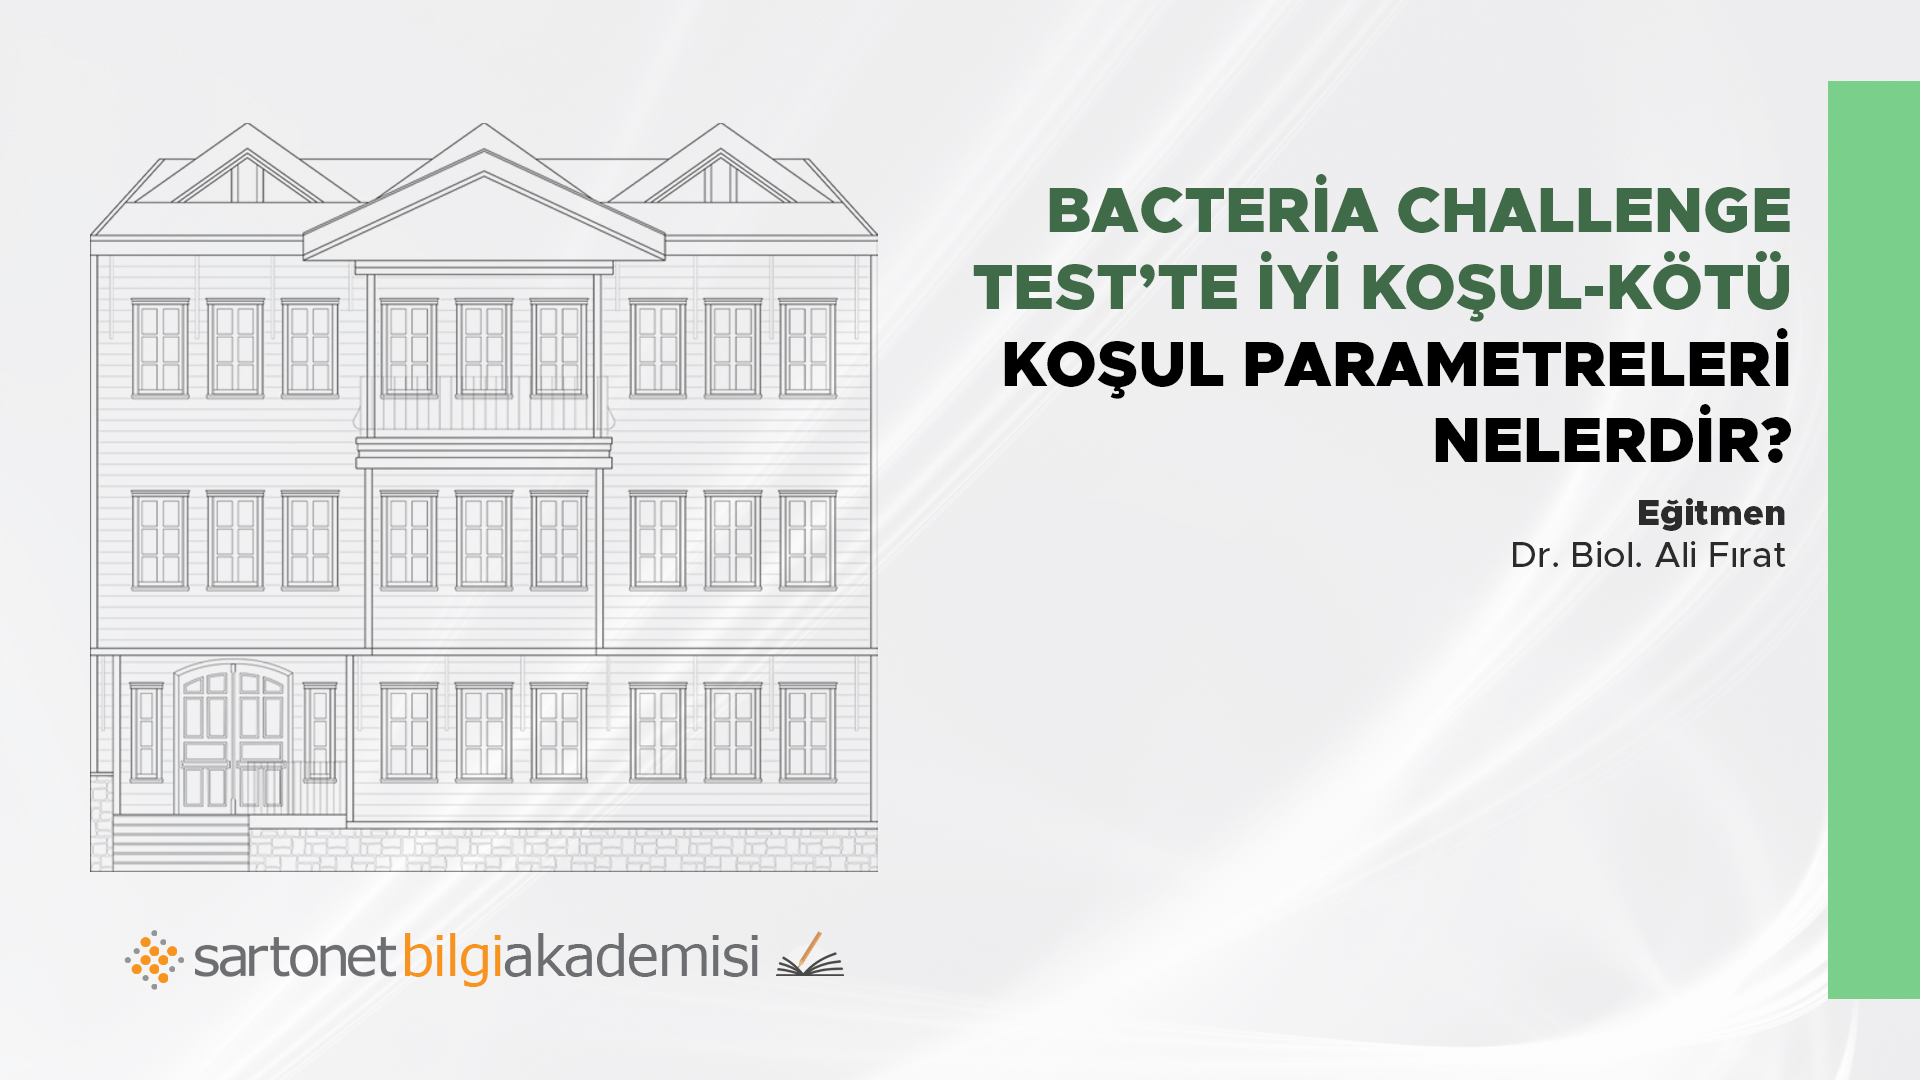 Bacteria Challenge Testte iyi koşul-kötü koşul parametreleri nedir?